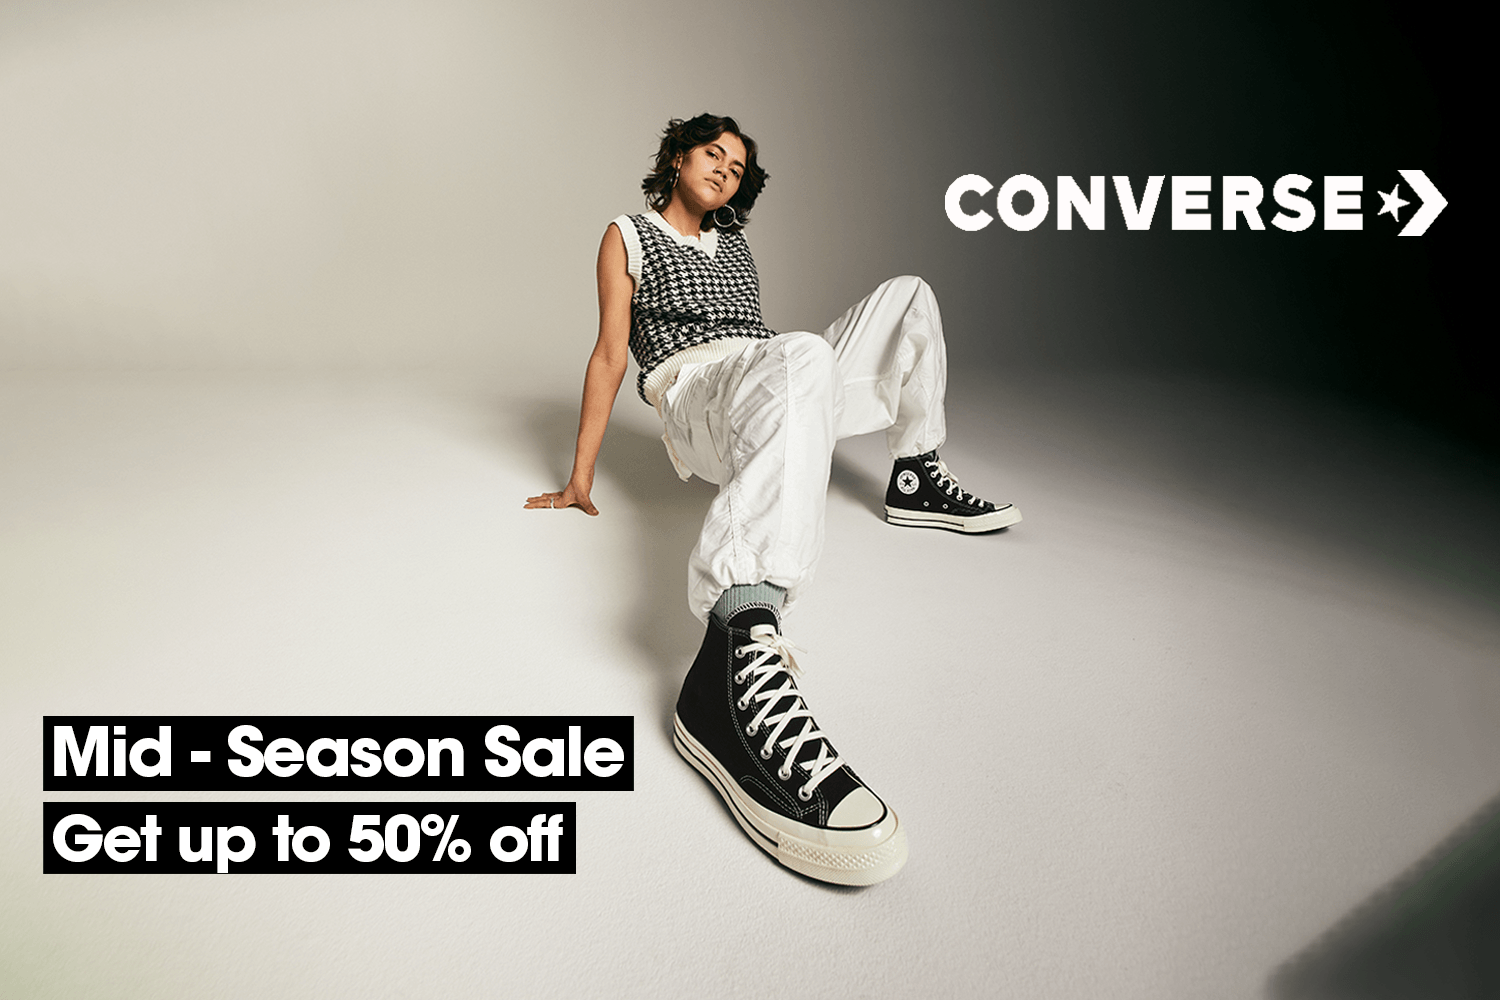 De Mid-season sale bij Converse is van start gegaan